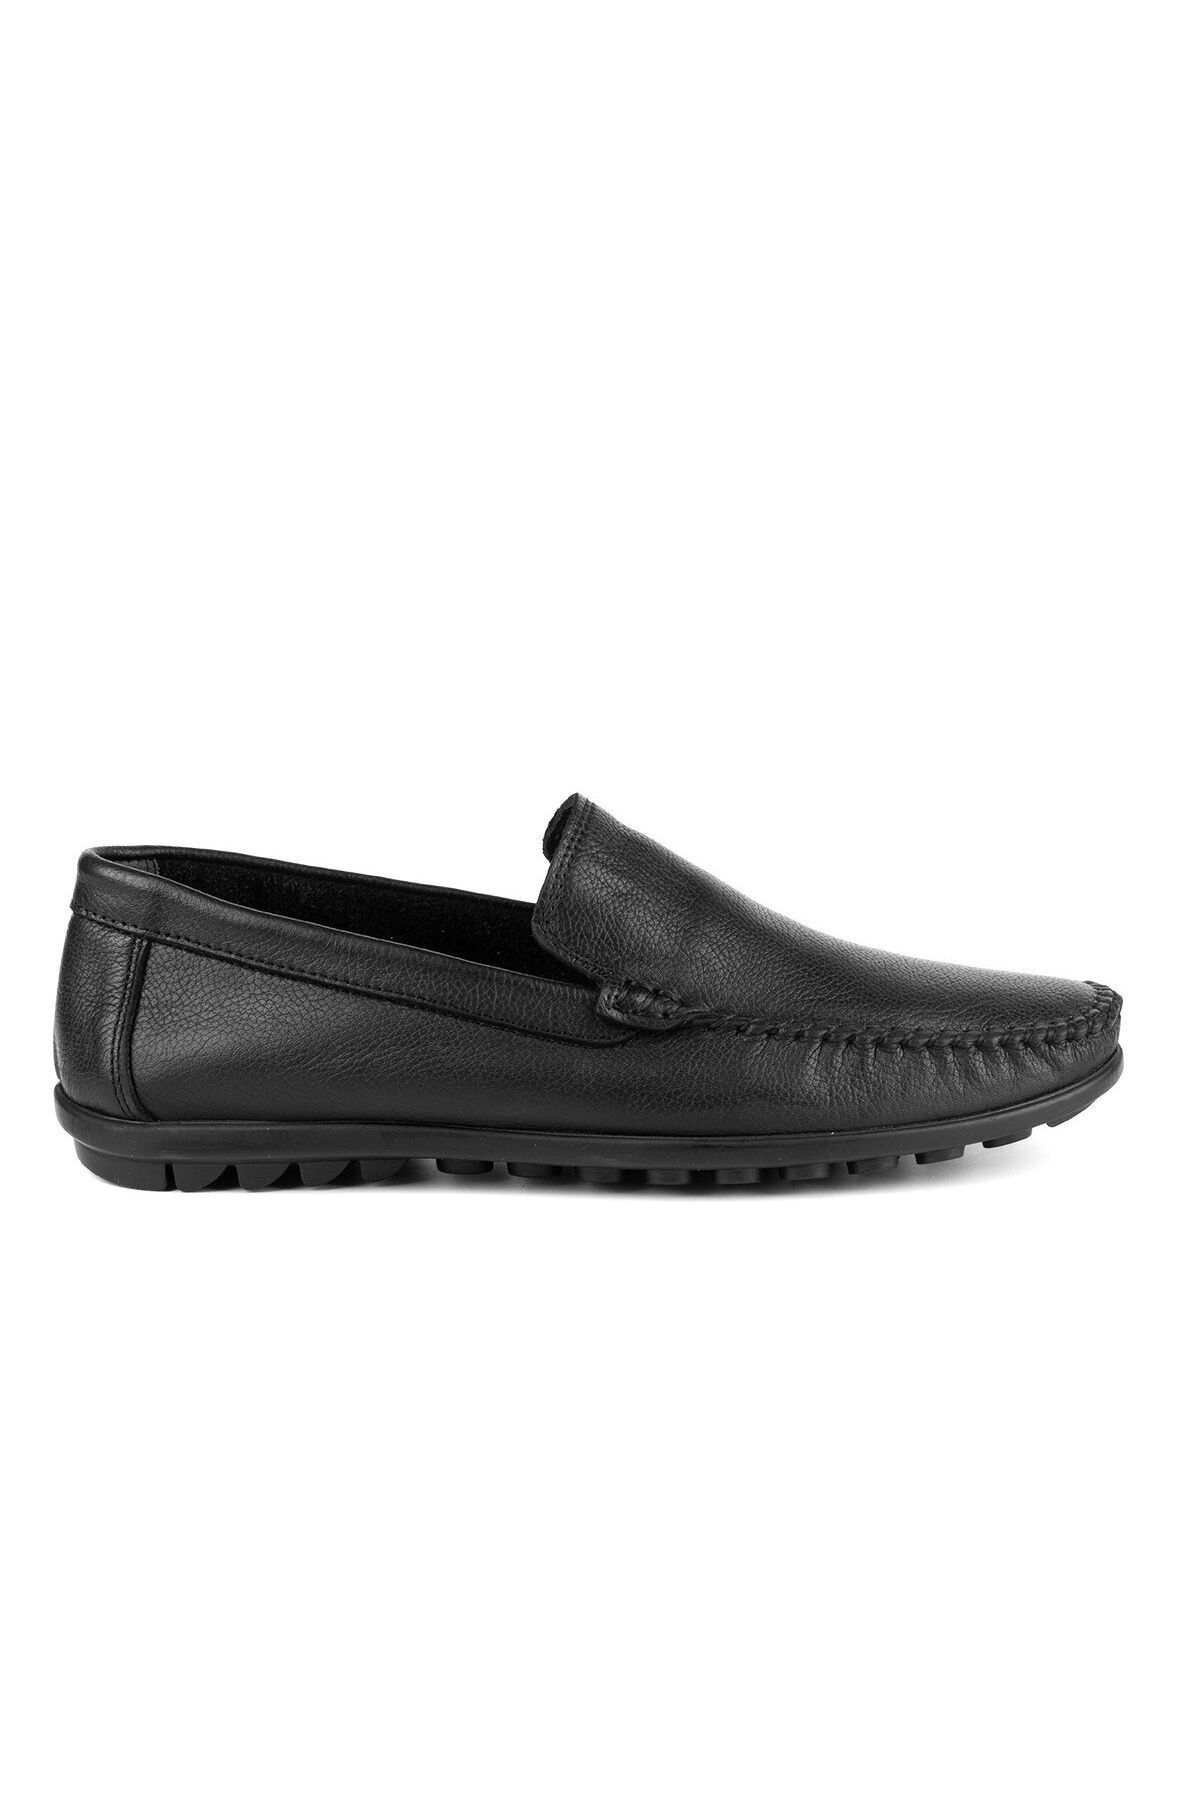 Tripy Hakiki Deri Erkek Büyük Numara Siyah Günlük Loafer Ayakkabı